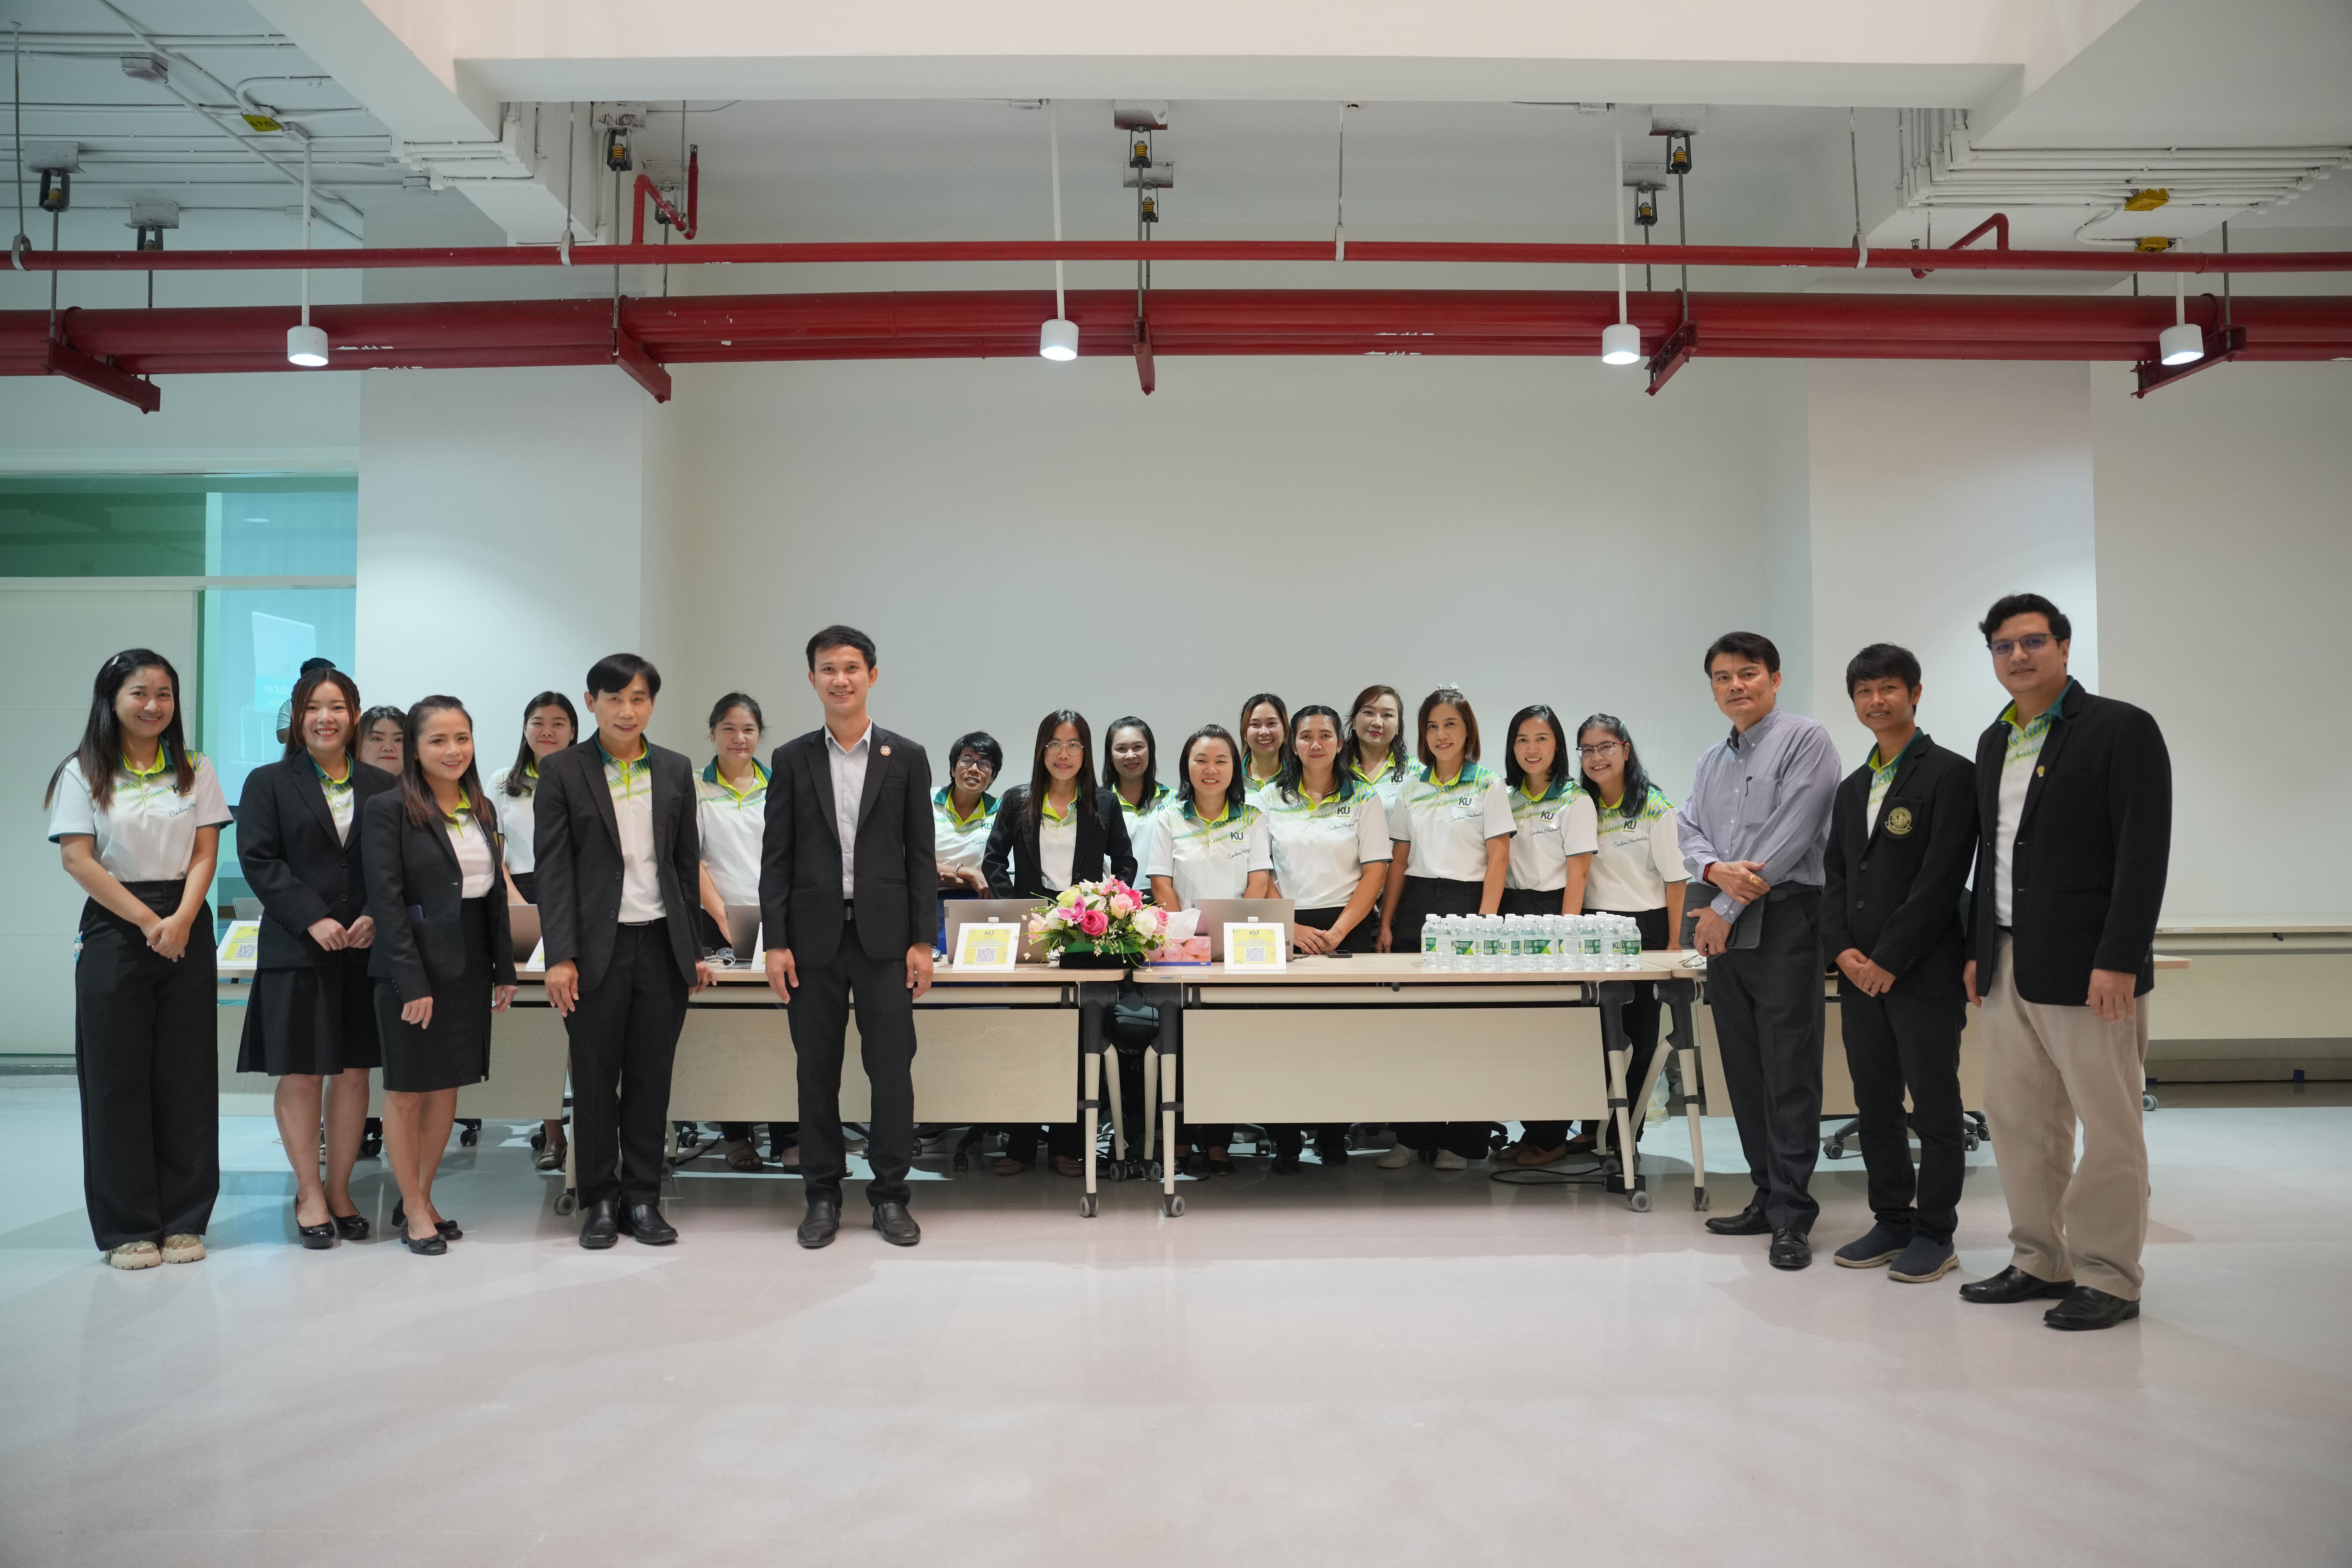 การประชุมสัมมนาอาจารย์มหาวิทยาลัยเกษตรศาสตร์ ประจำปี 2567 เรื่อง “Future Design for Smart Thai and Global Citizen” 